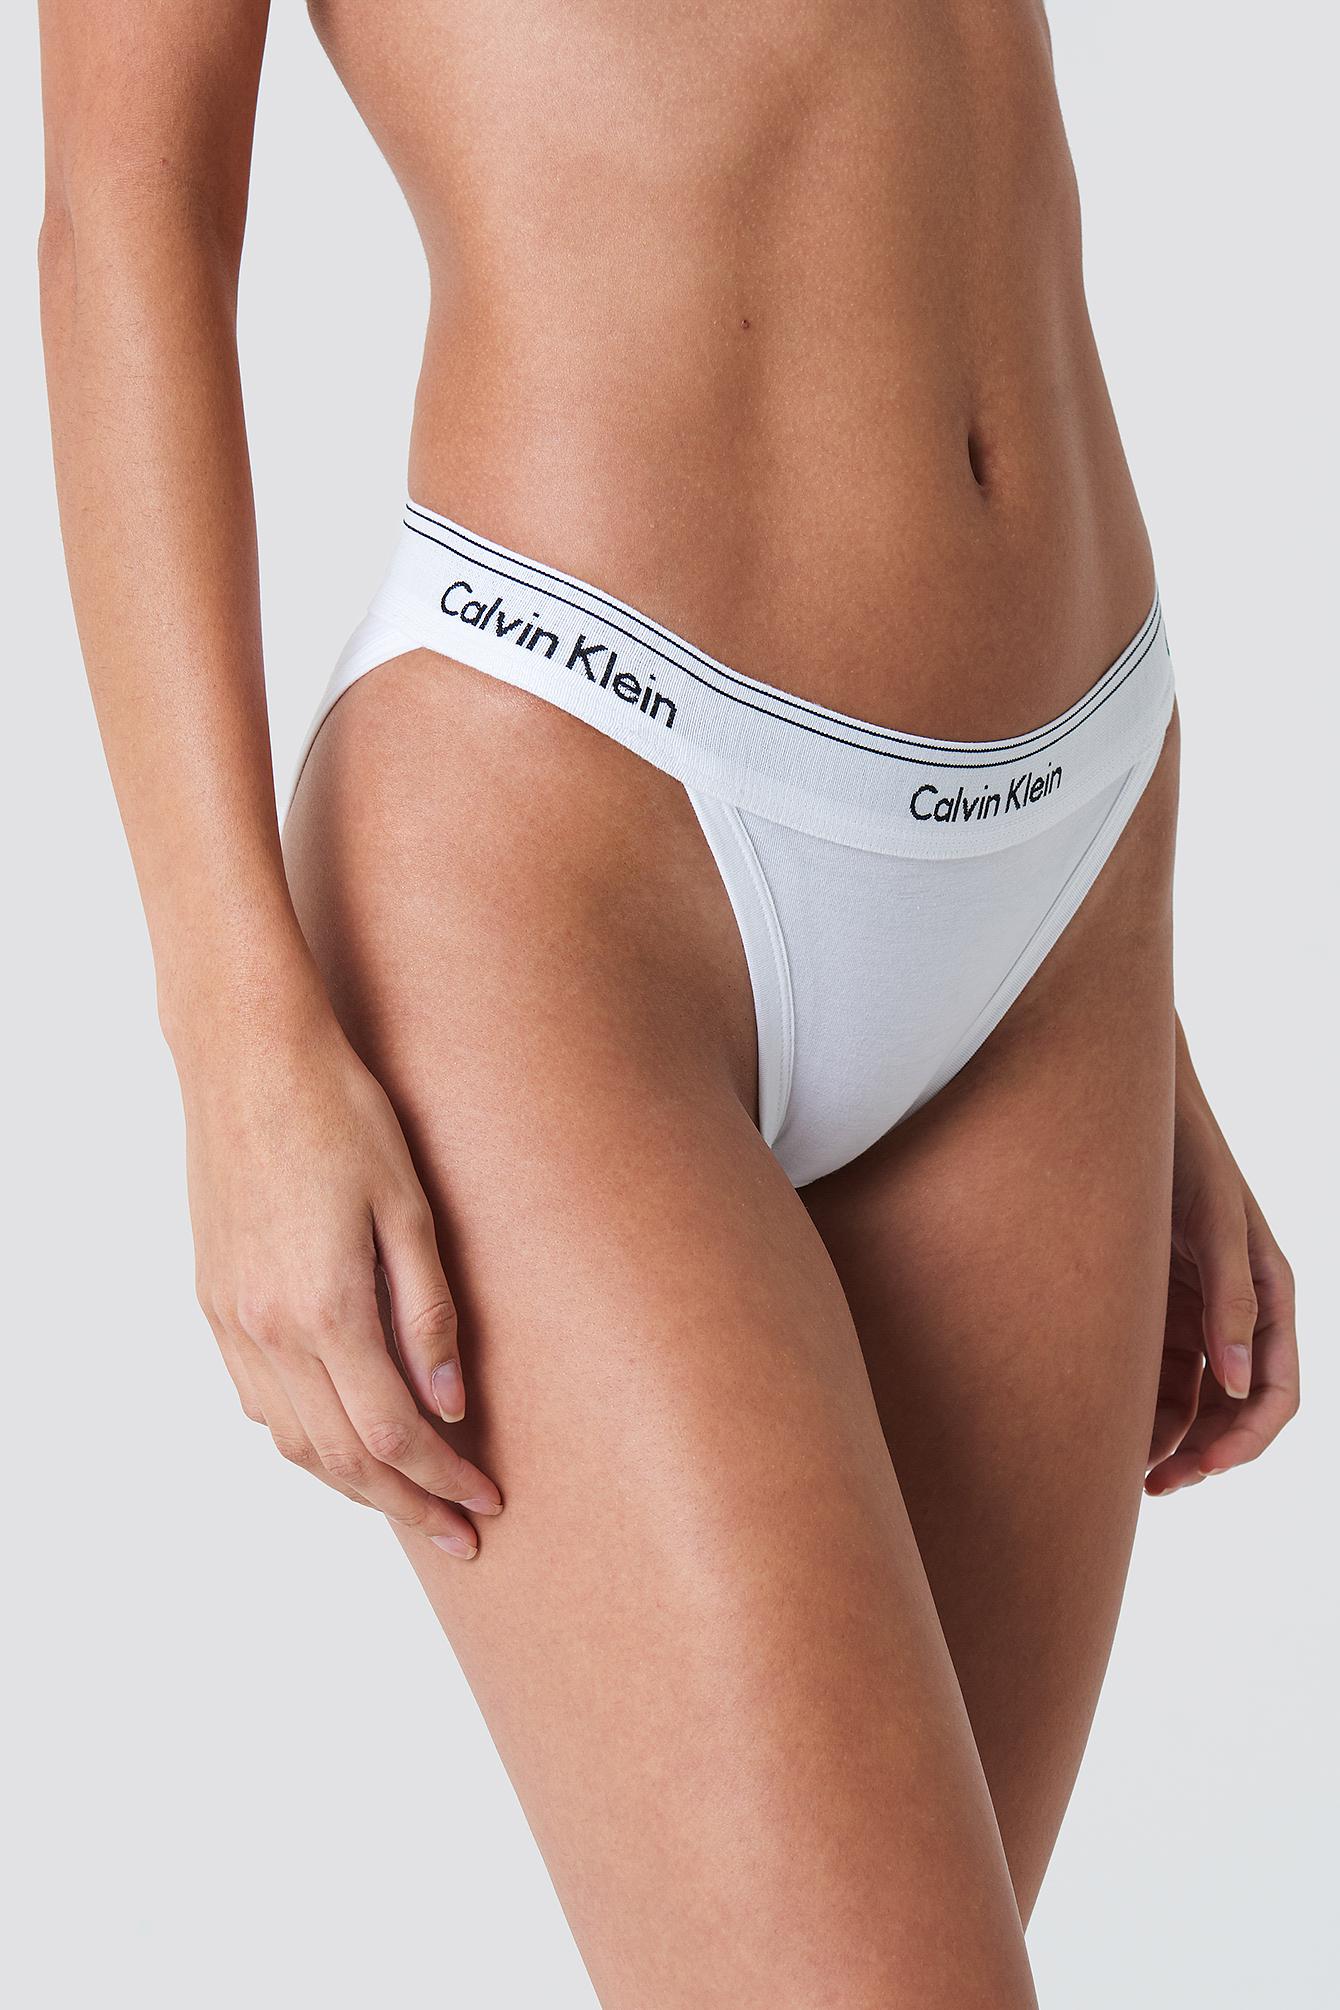 Calvin Klein Tanga High Leg Panties in White | Lyst